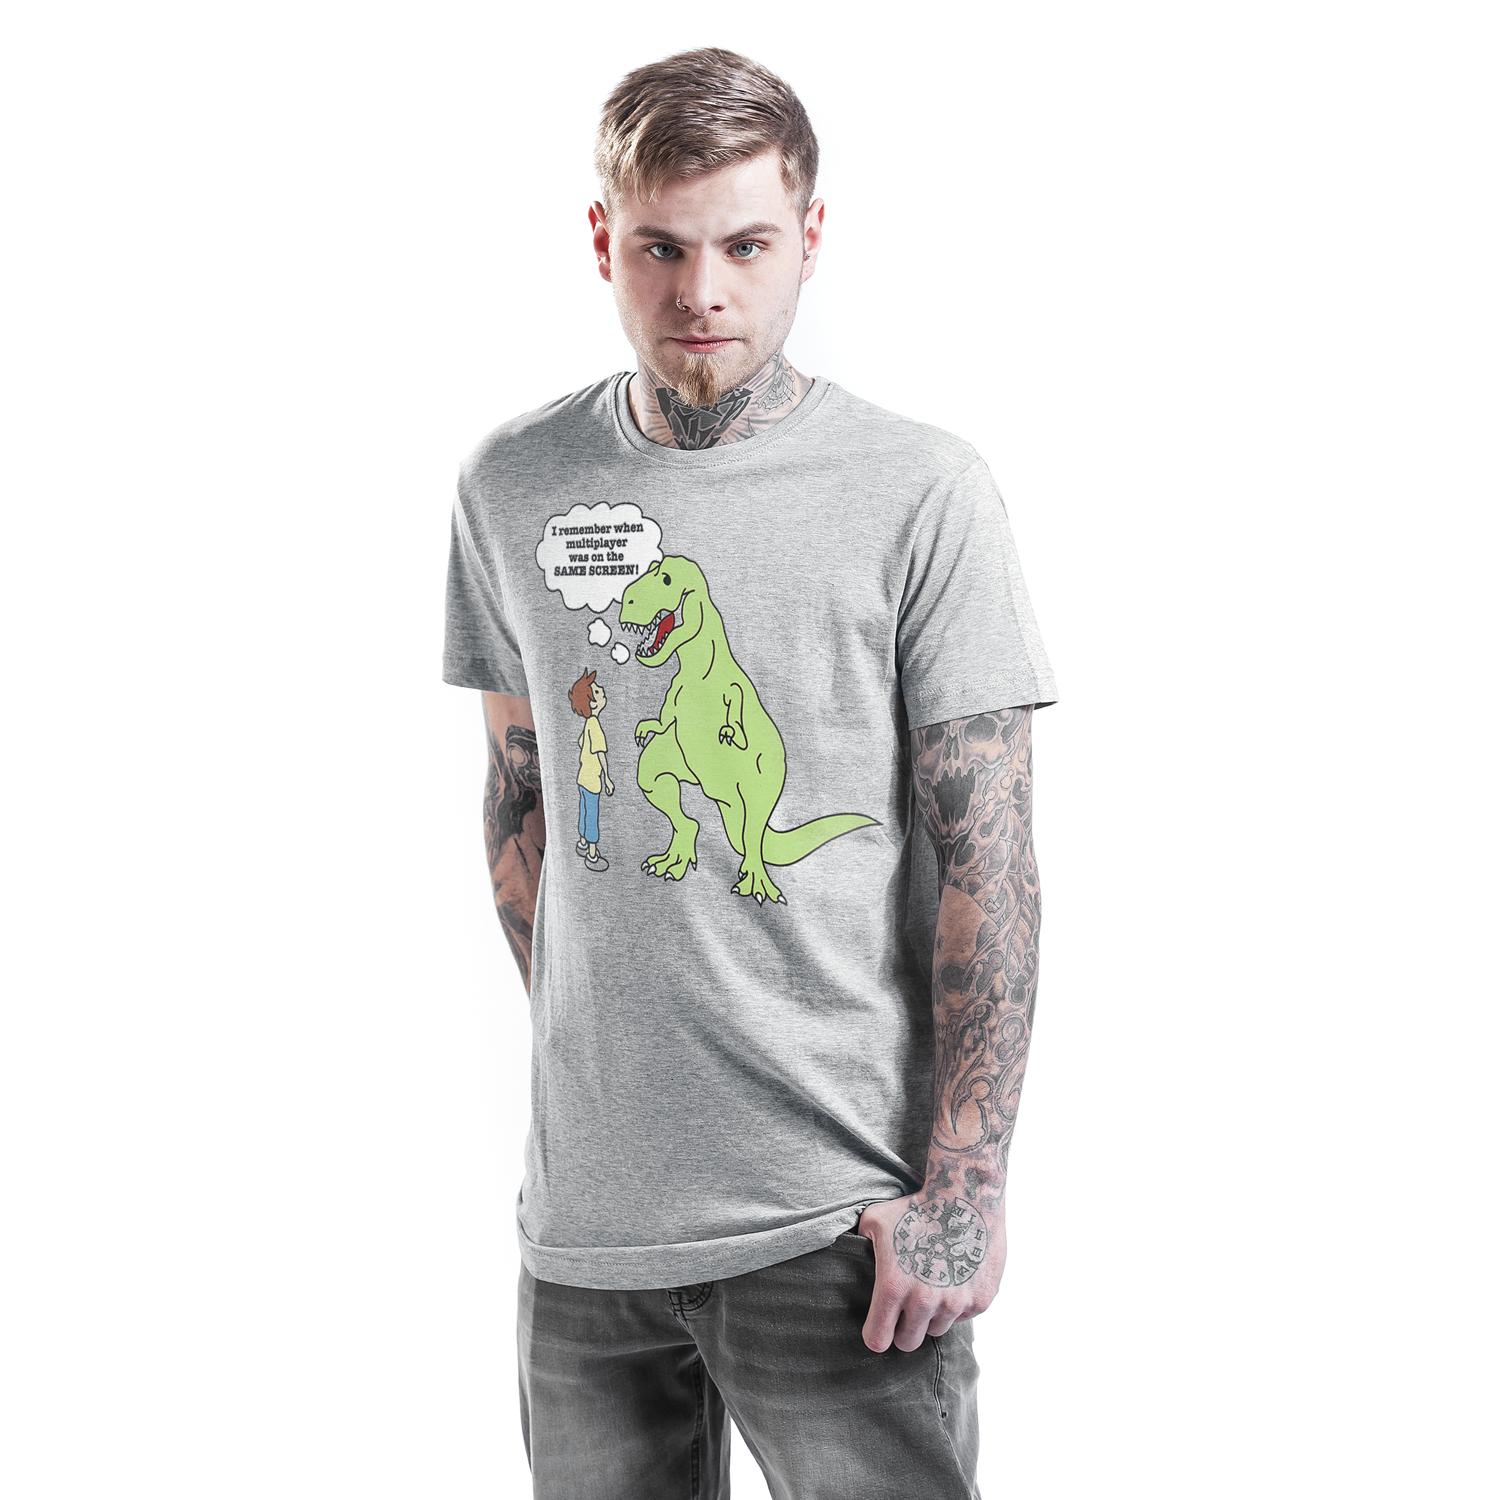 T-Rex T-shirt Design man